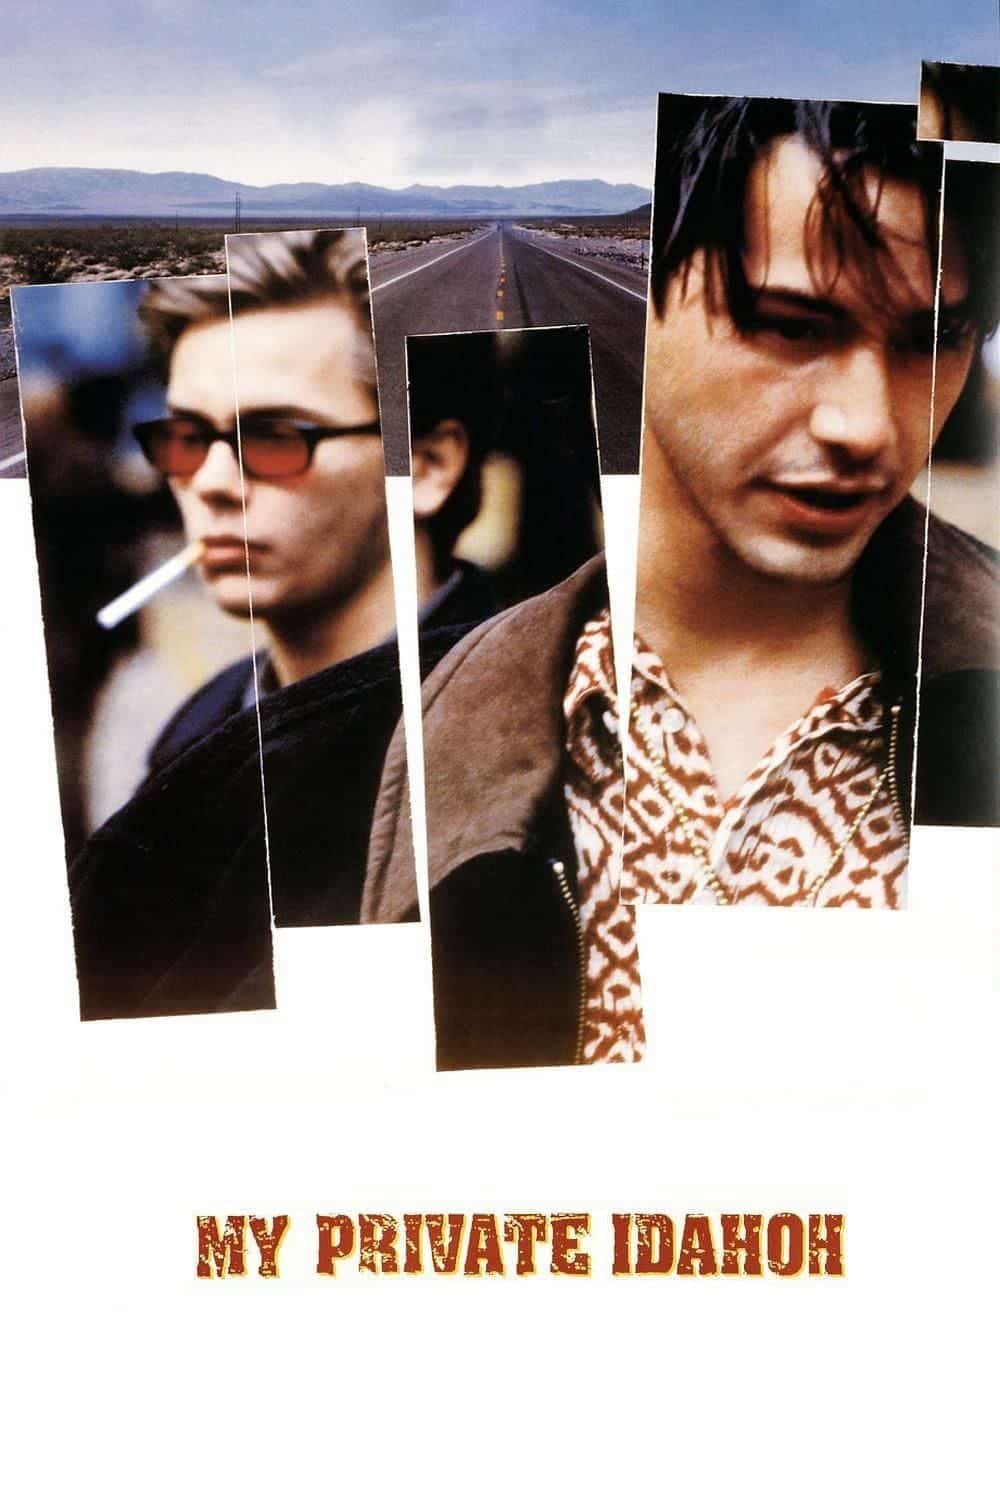 Plakat von "My Private Idaho"